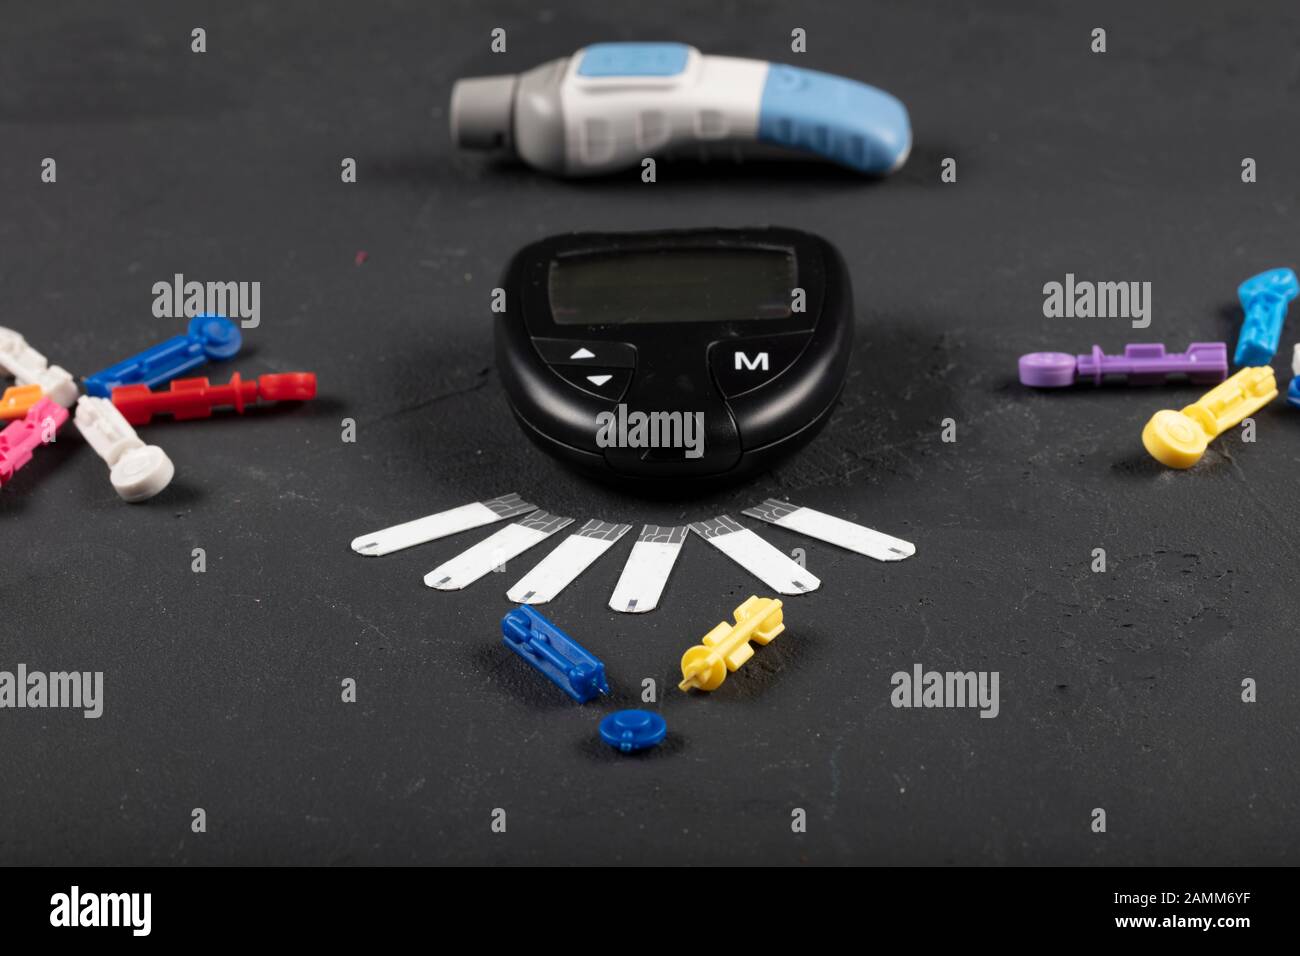 Glukosimeter (Zuckermessgerät) und Spritze für Insulin, Überwachung von  Diabetes mellitus isoliert auf schwarzem Hintergrund Stockfotografie - Alamy